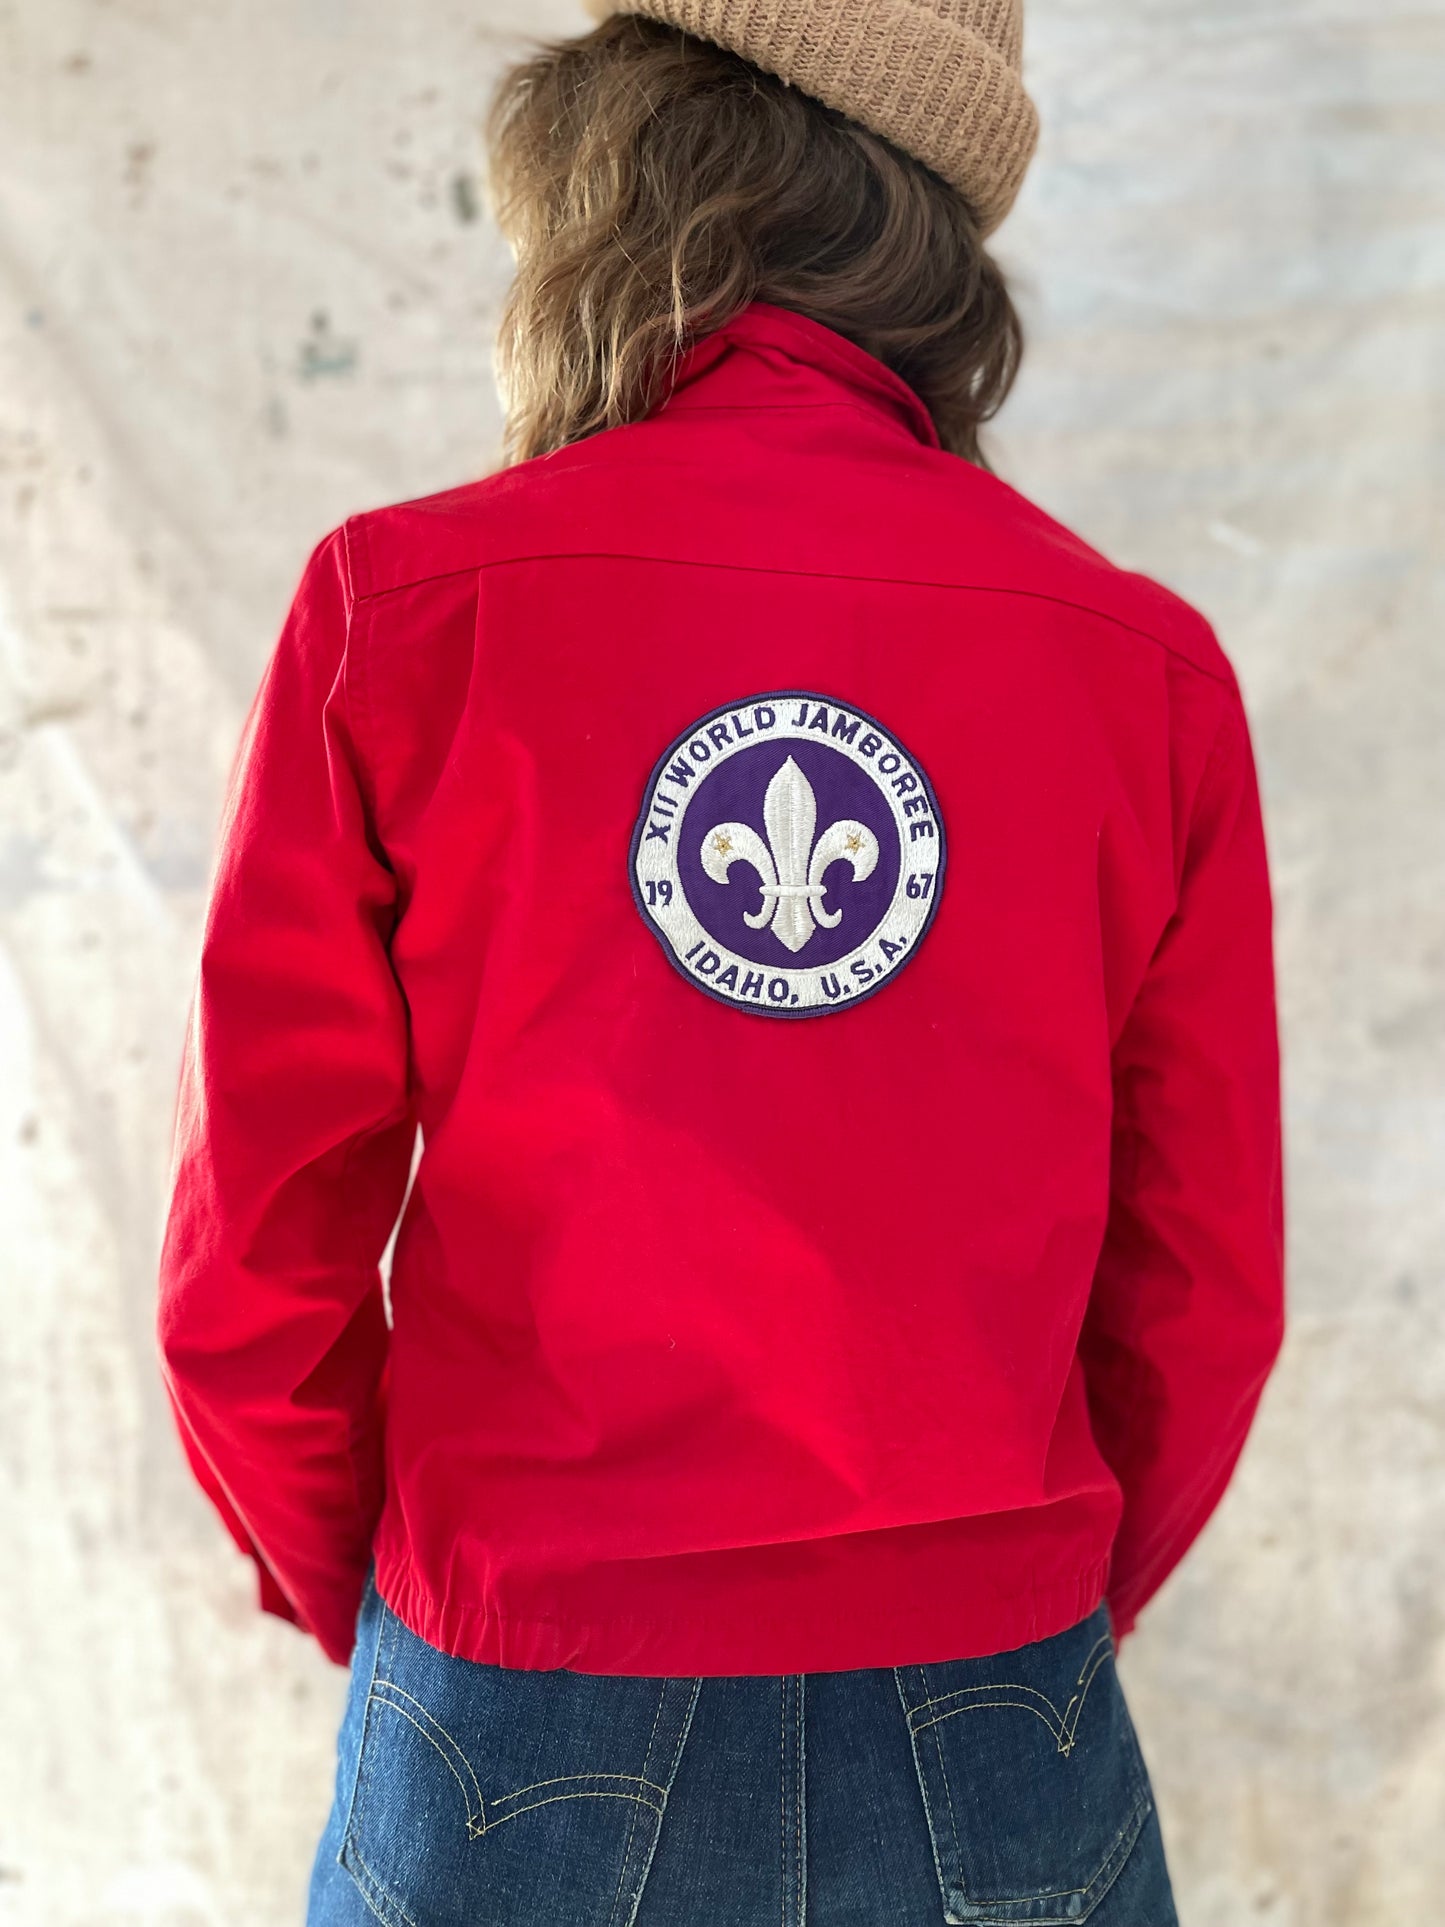 Boy Scouts World Jamboree, Idaho, 1967 Jacket